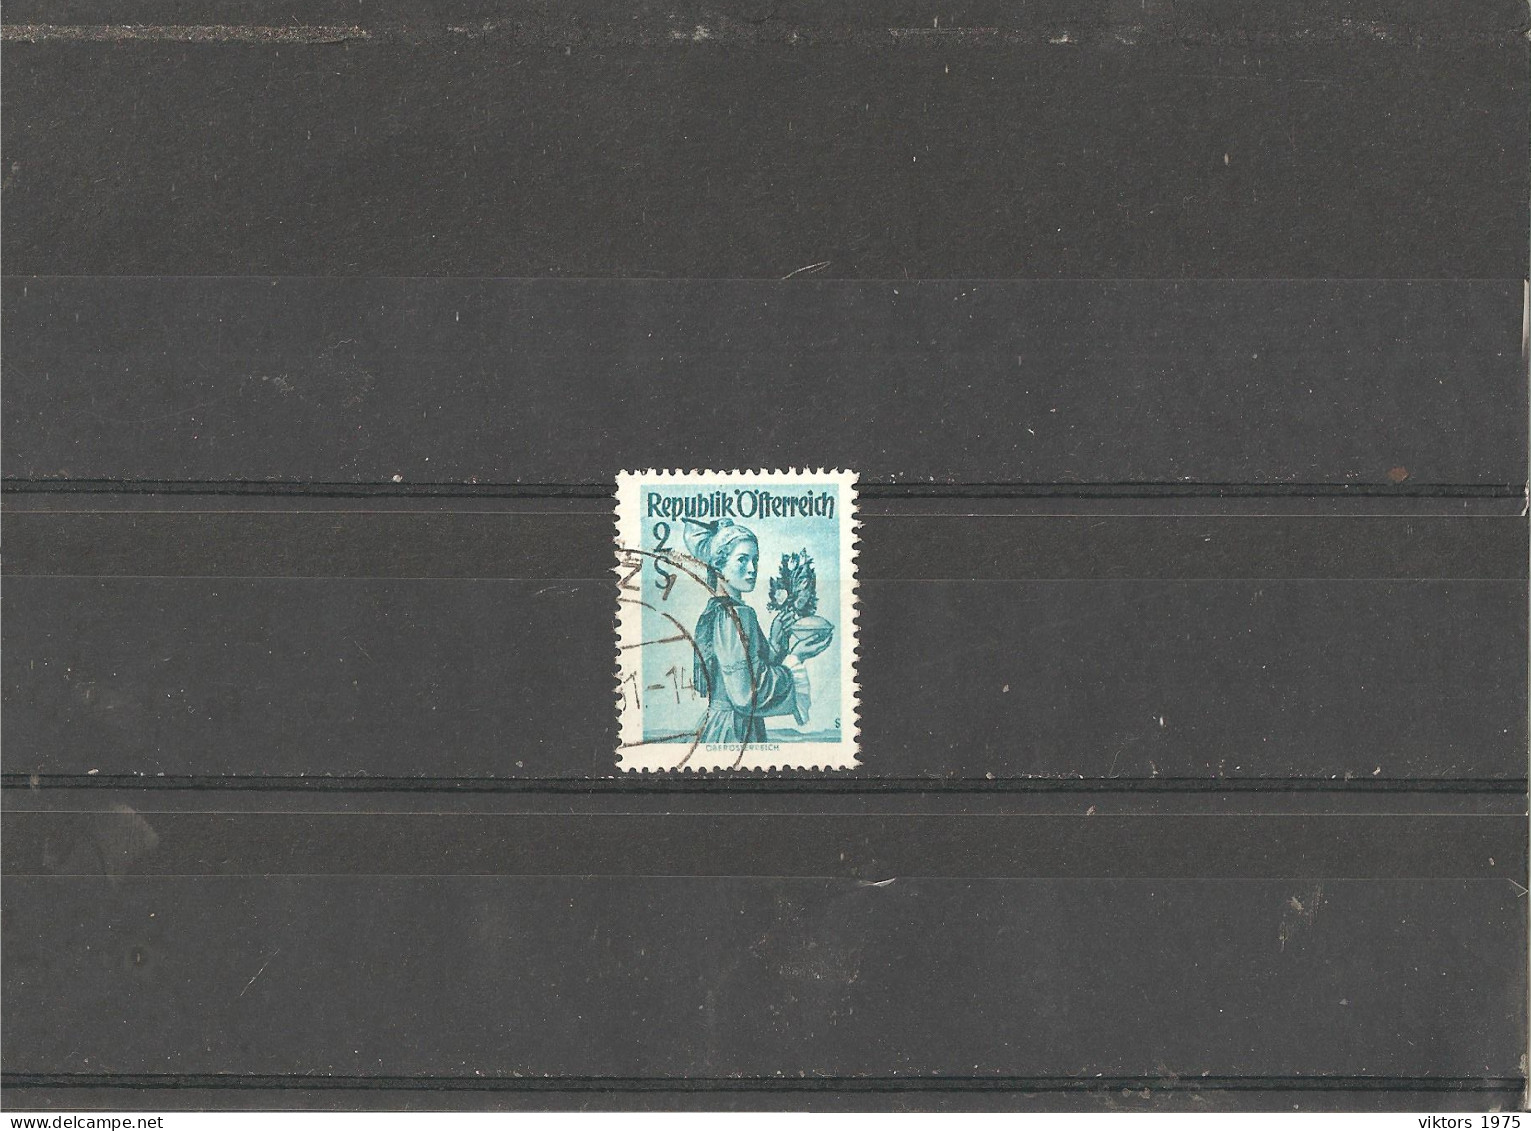 Used Stamp Nr.919 In MICHEL Catalog - Usati